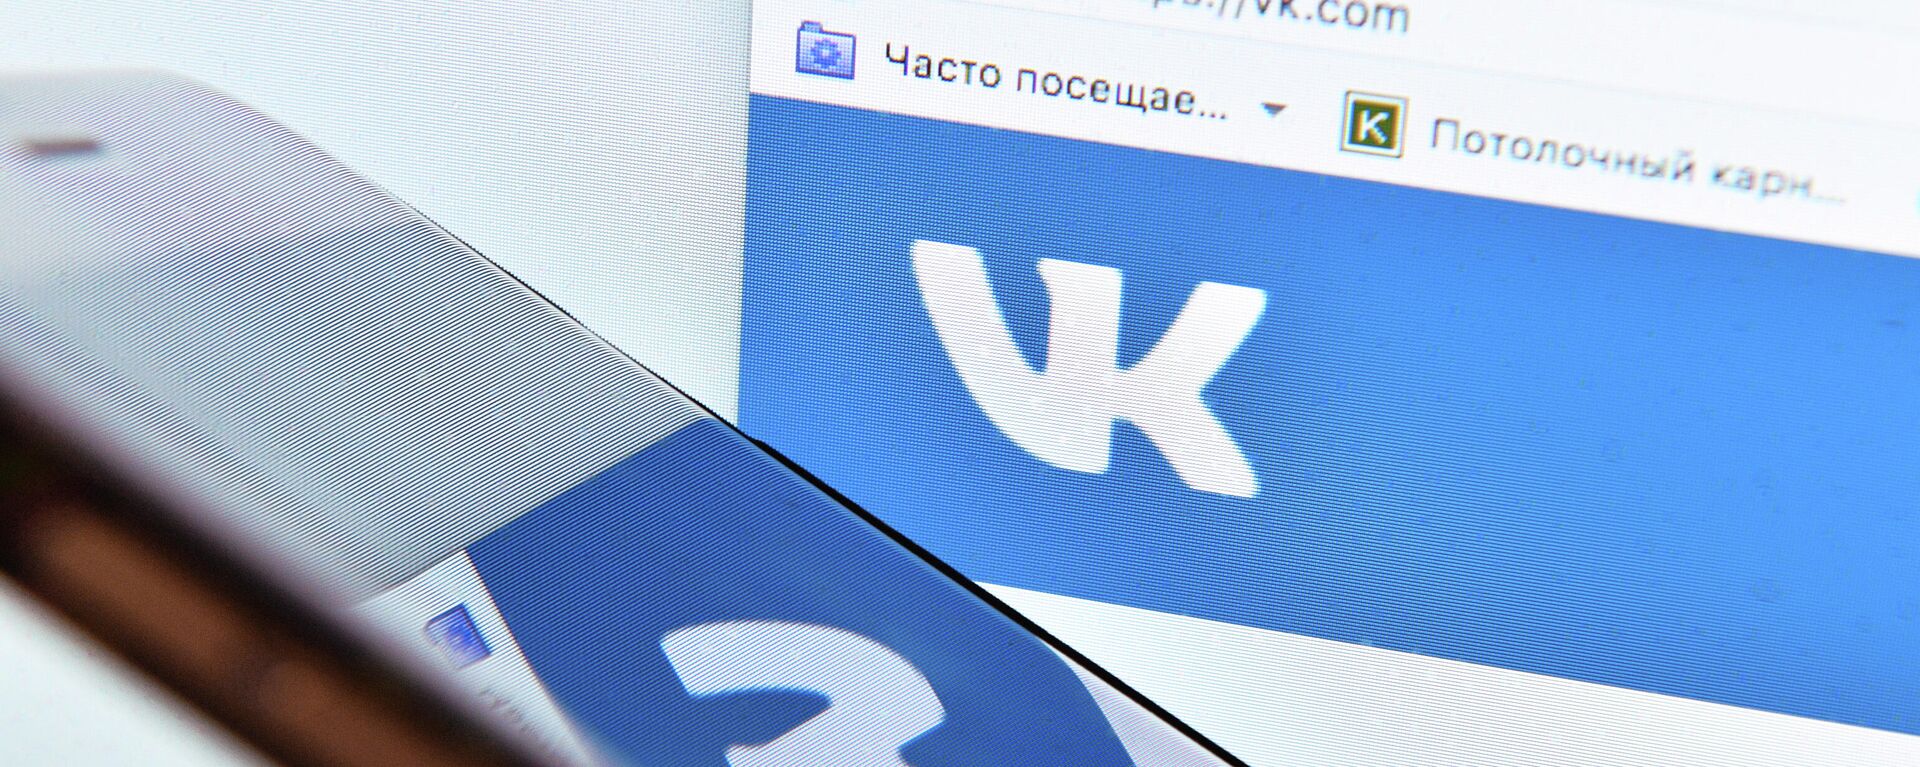 Страница социальной сети Вконтакте на экране компьютера - Sputnik Azərbaycan, 1920, 10.03.2022